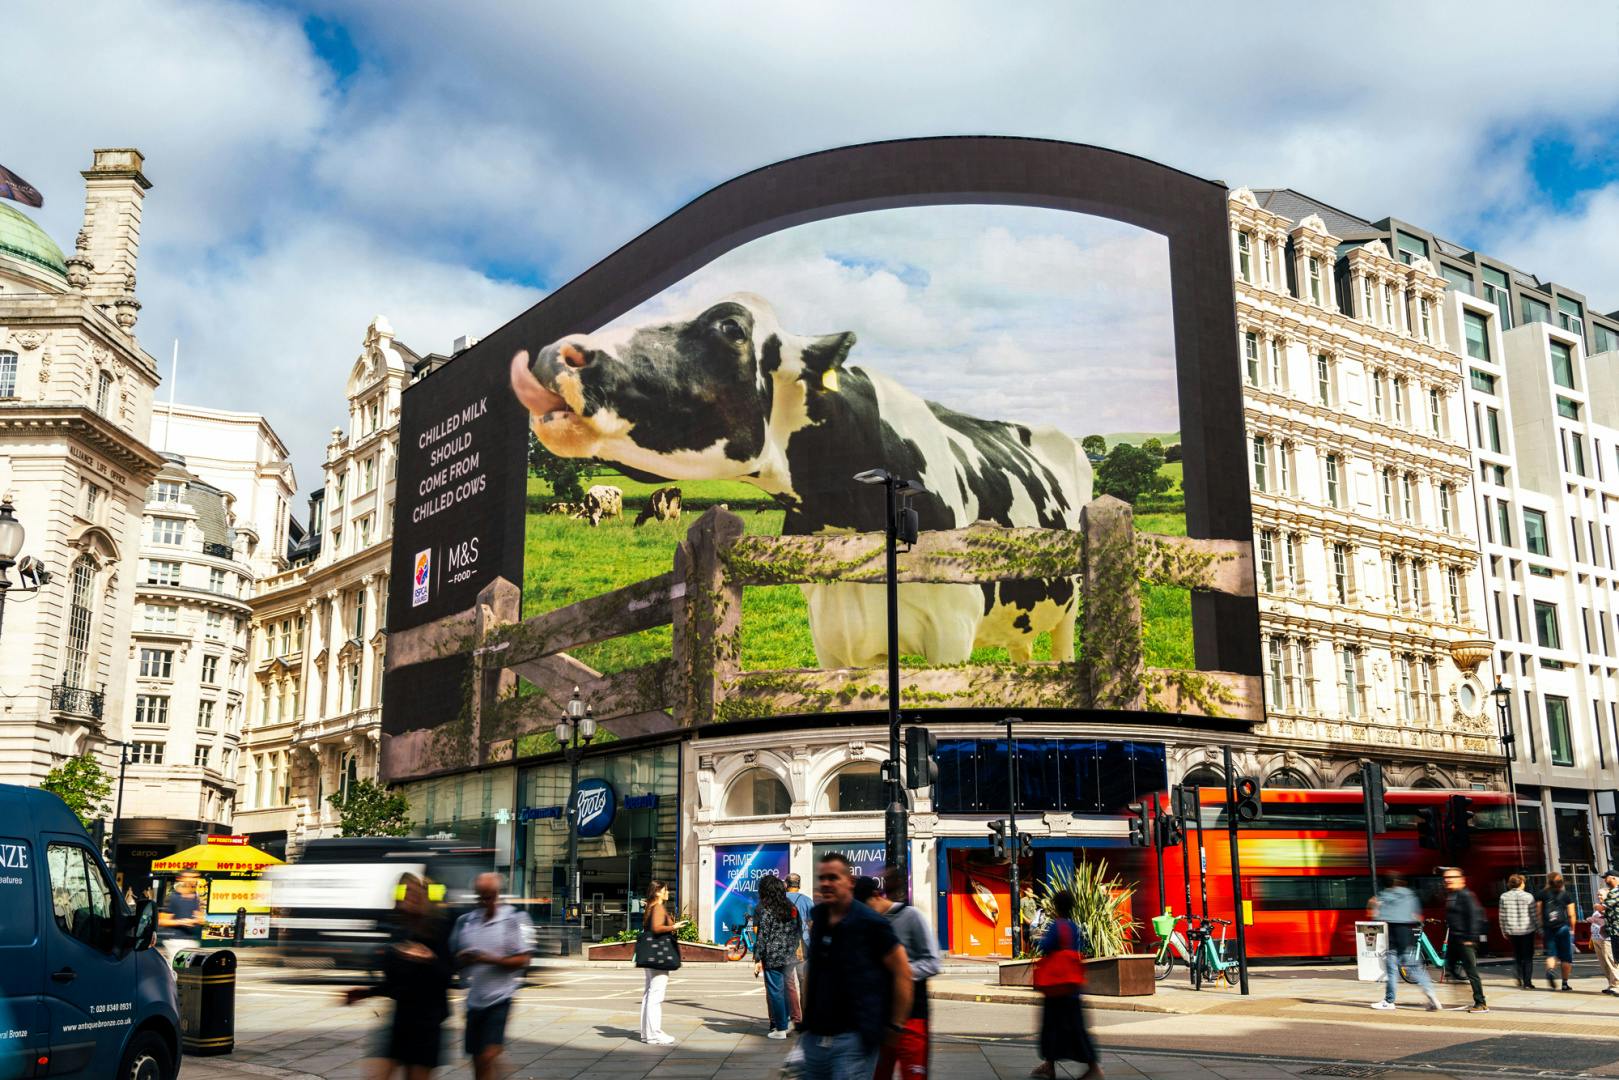 M&S Food 3D billboard campaign